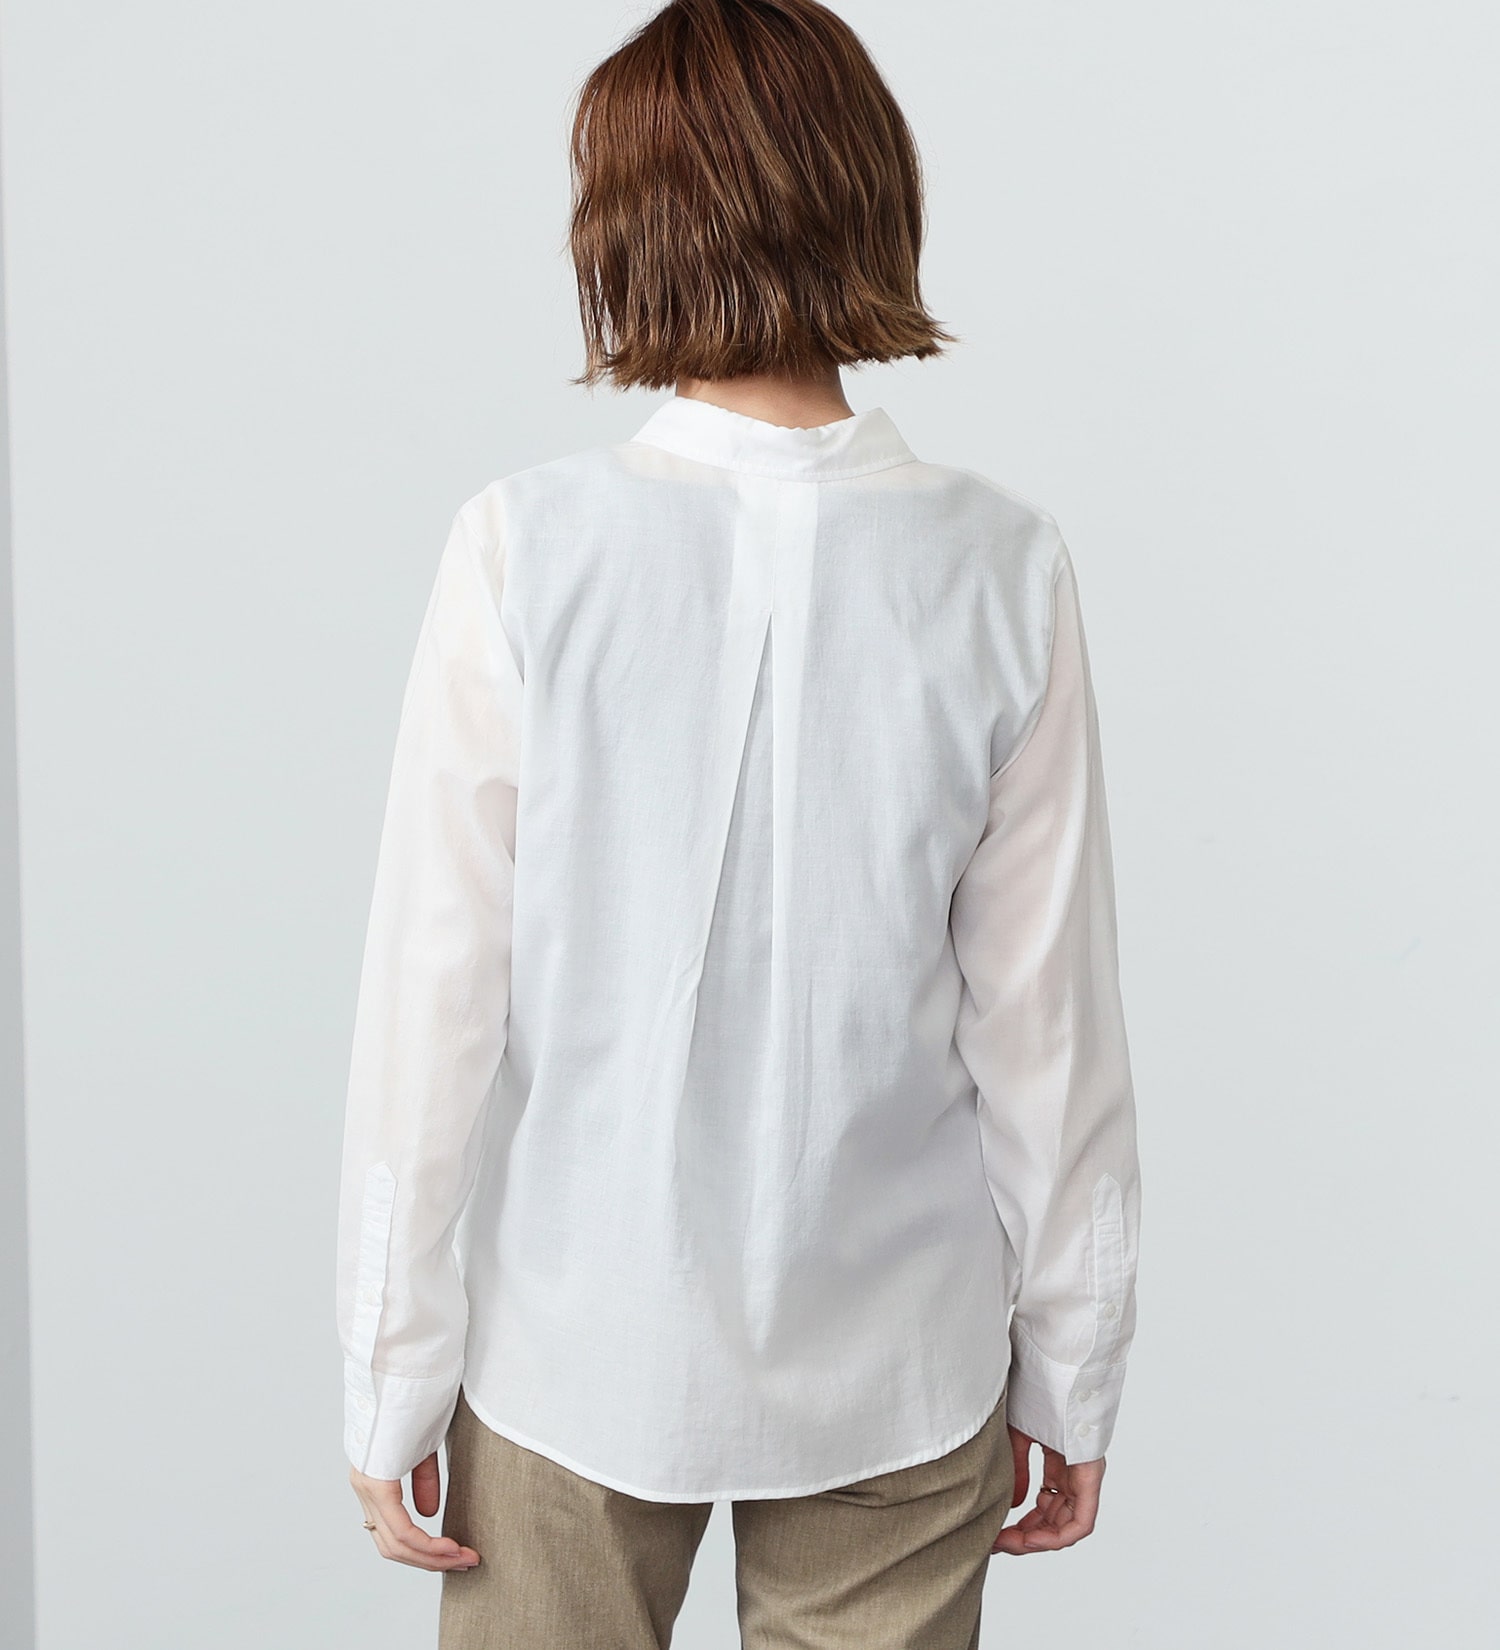 SOMETHING(サムシング)のSOMETHING 長袖シャツ|トップス/シャツ/ブラウス/レディース|ホワイト